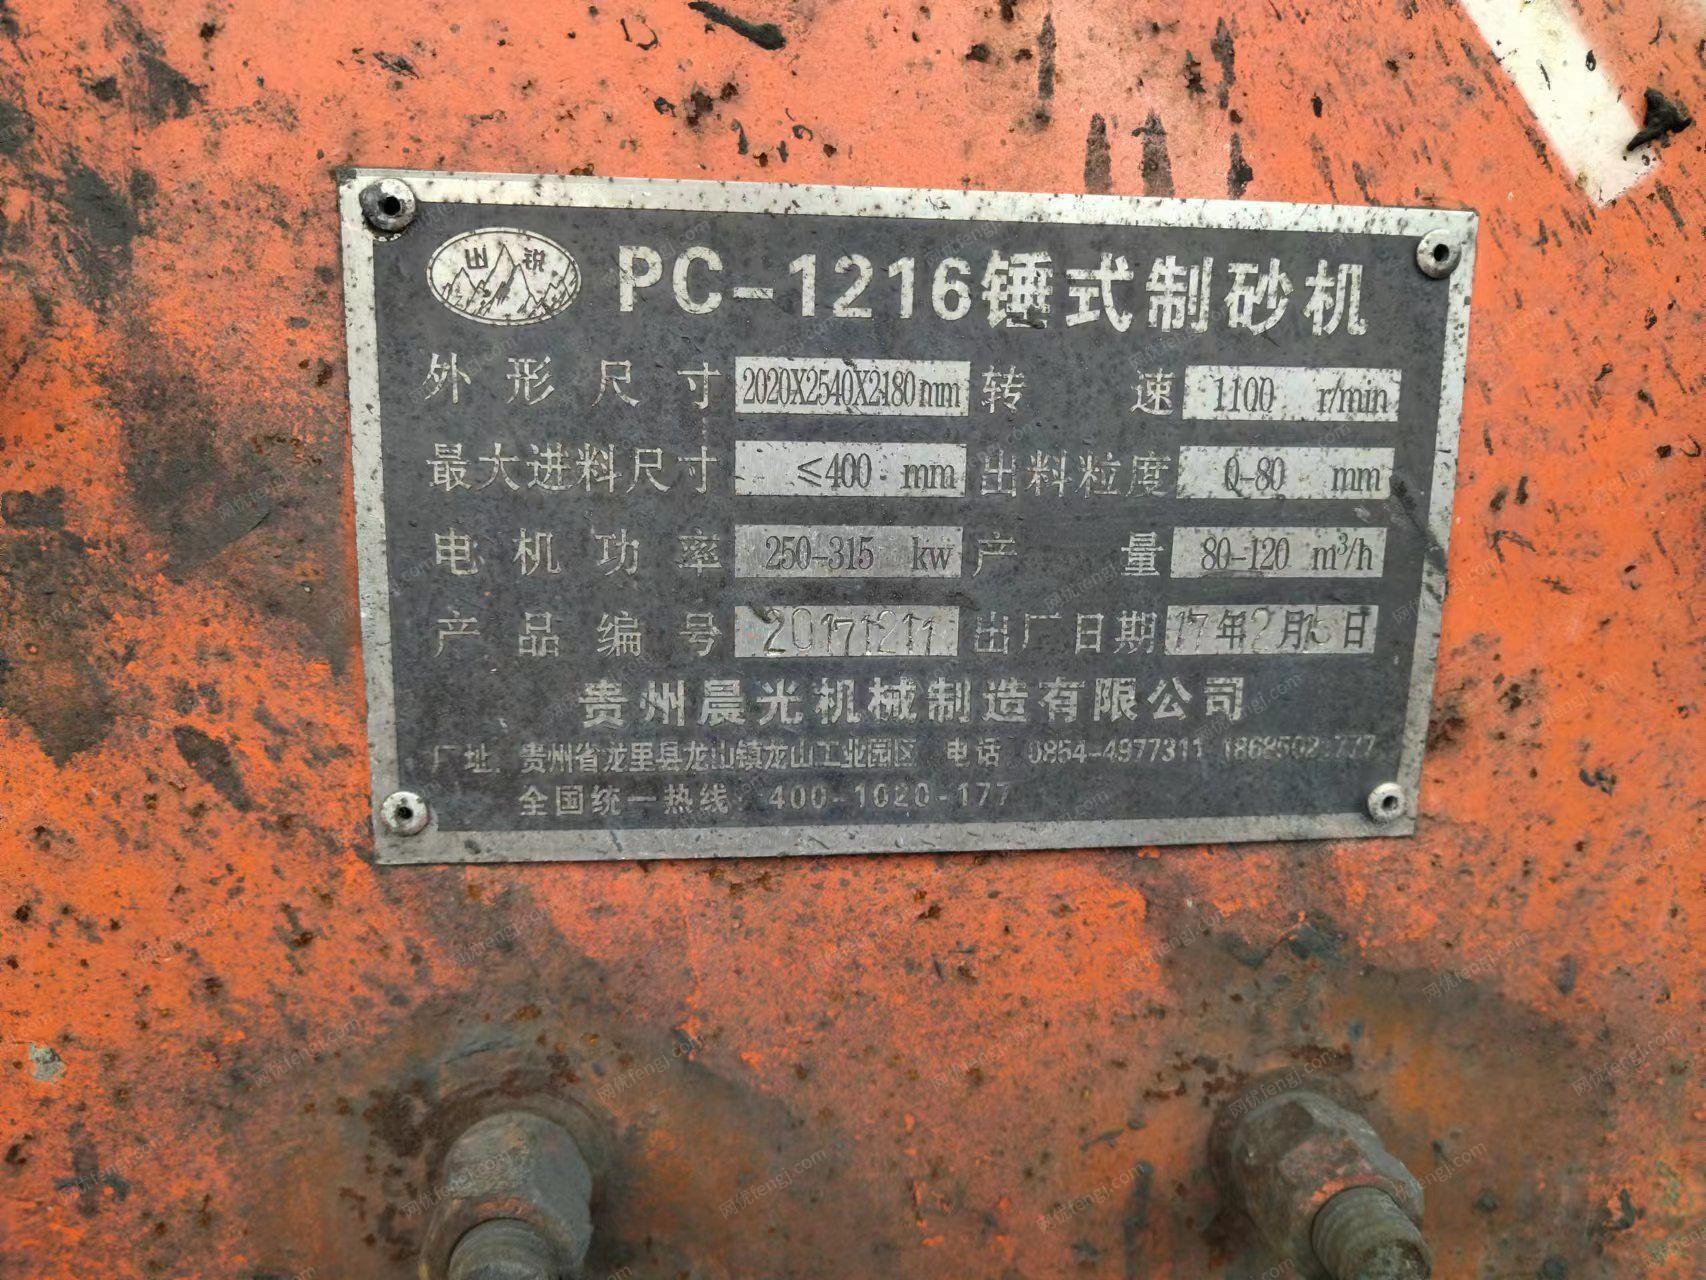 石料场打包急处理19年贵州315KVA变压器，每小时产100吨打砂机各1台，日产量1000多吨整条生产线，详见图，要的这两天尽快联系